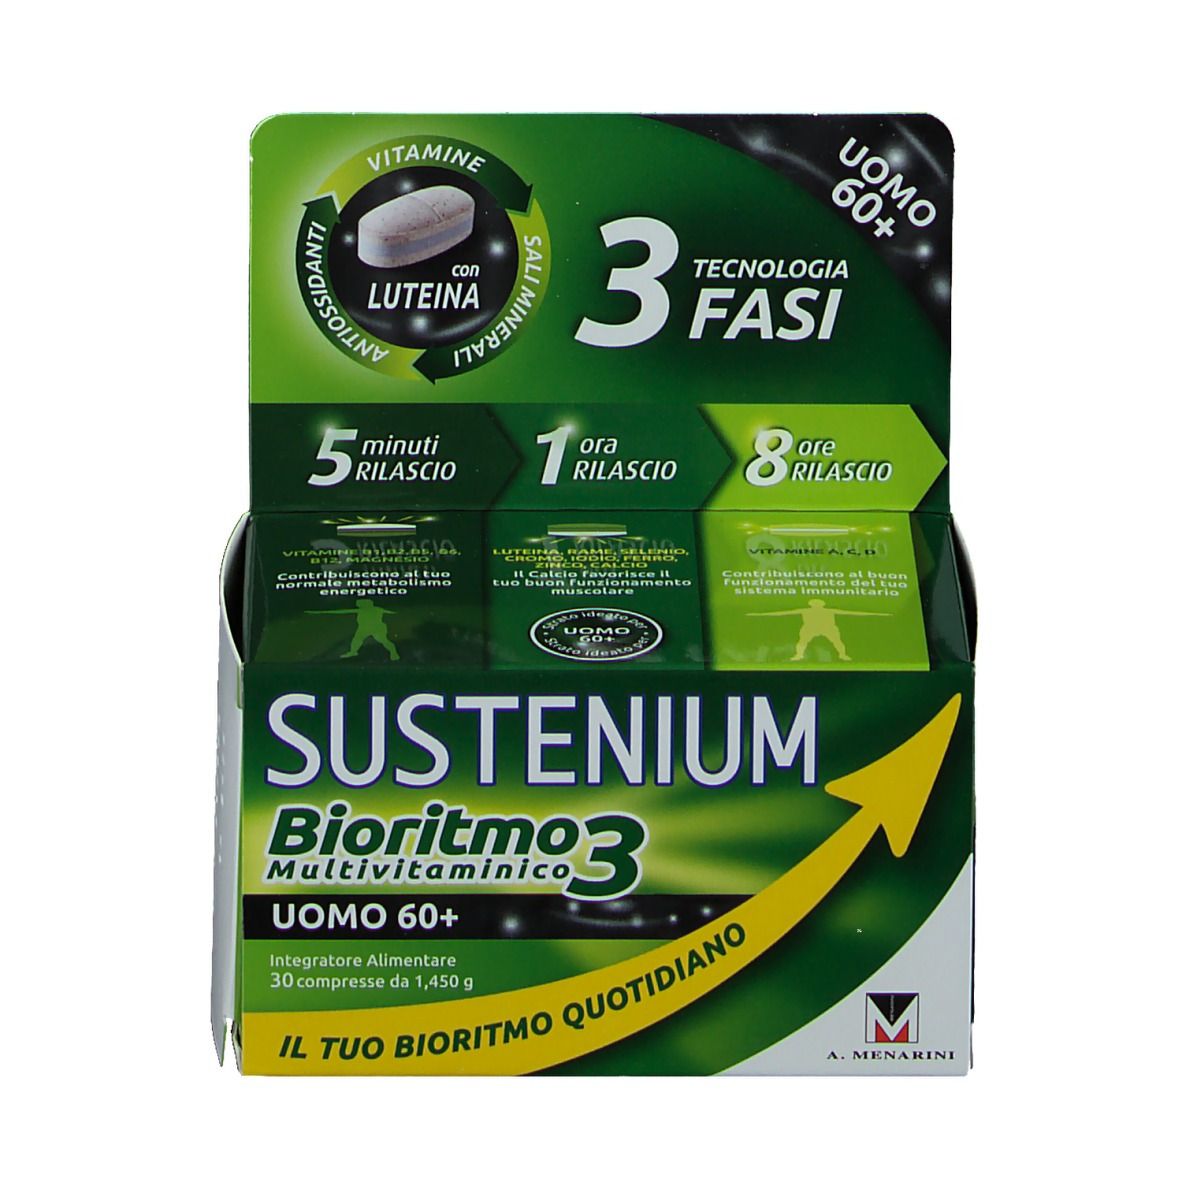 Sustenium Bioritmo3 Uomo 60+